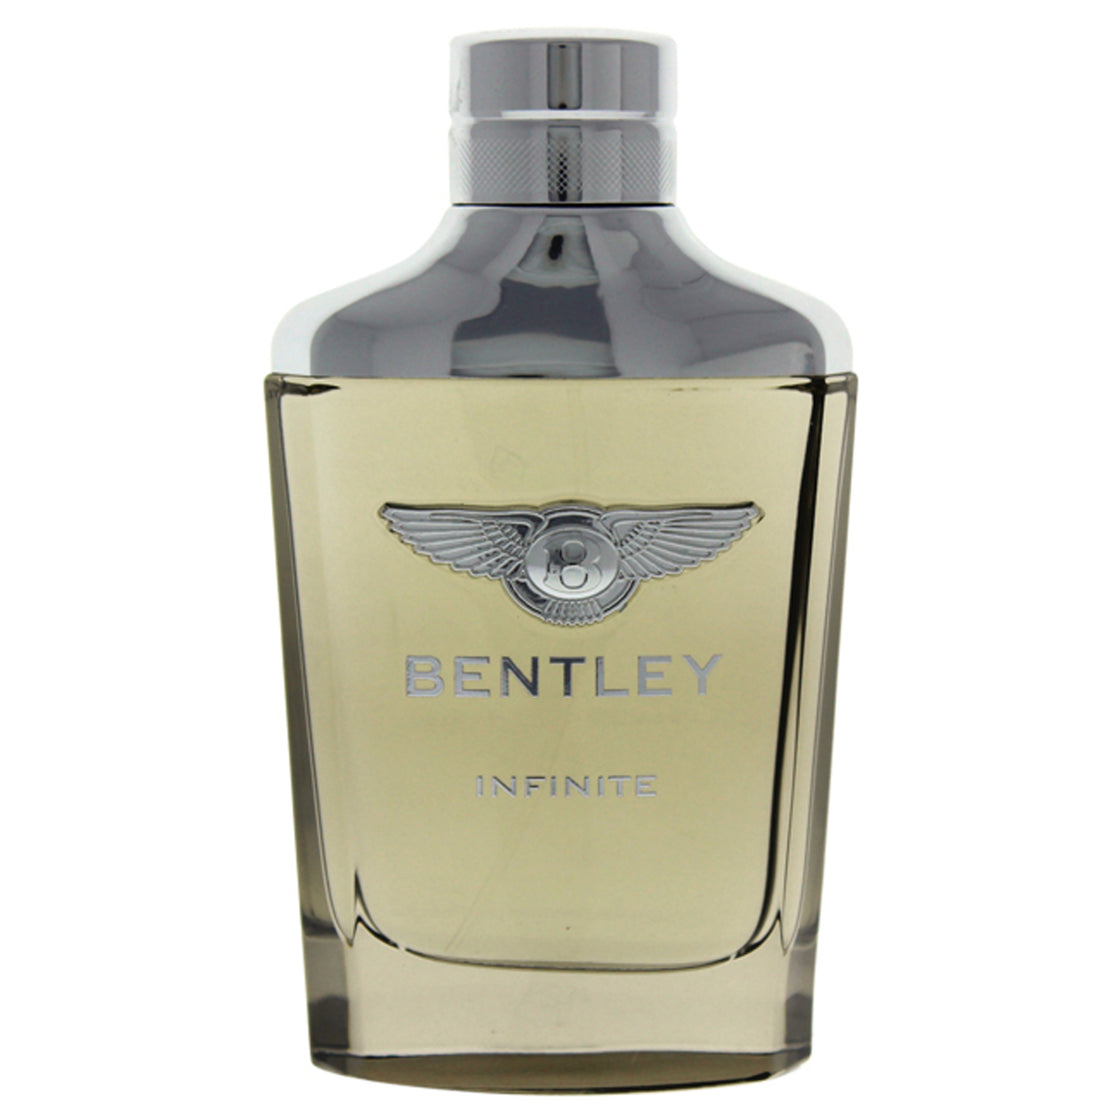 Bentley Infinite by Bentley for Men - 3.4 oz EDT Spray (Tester)